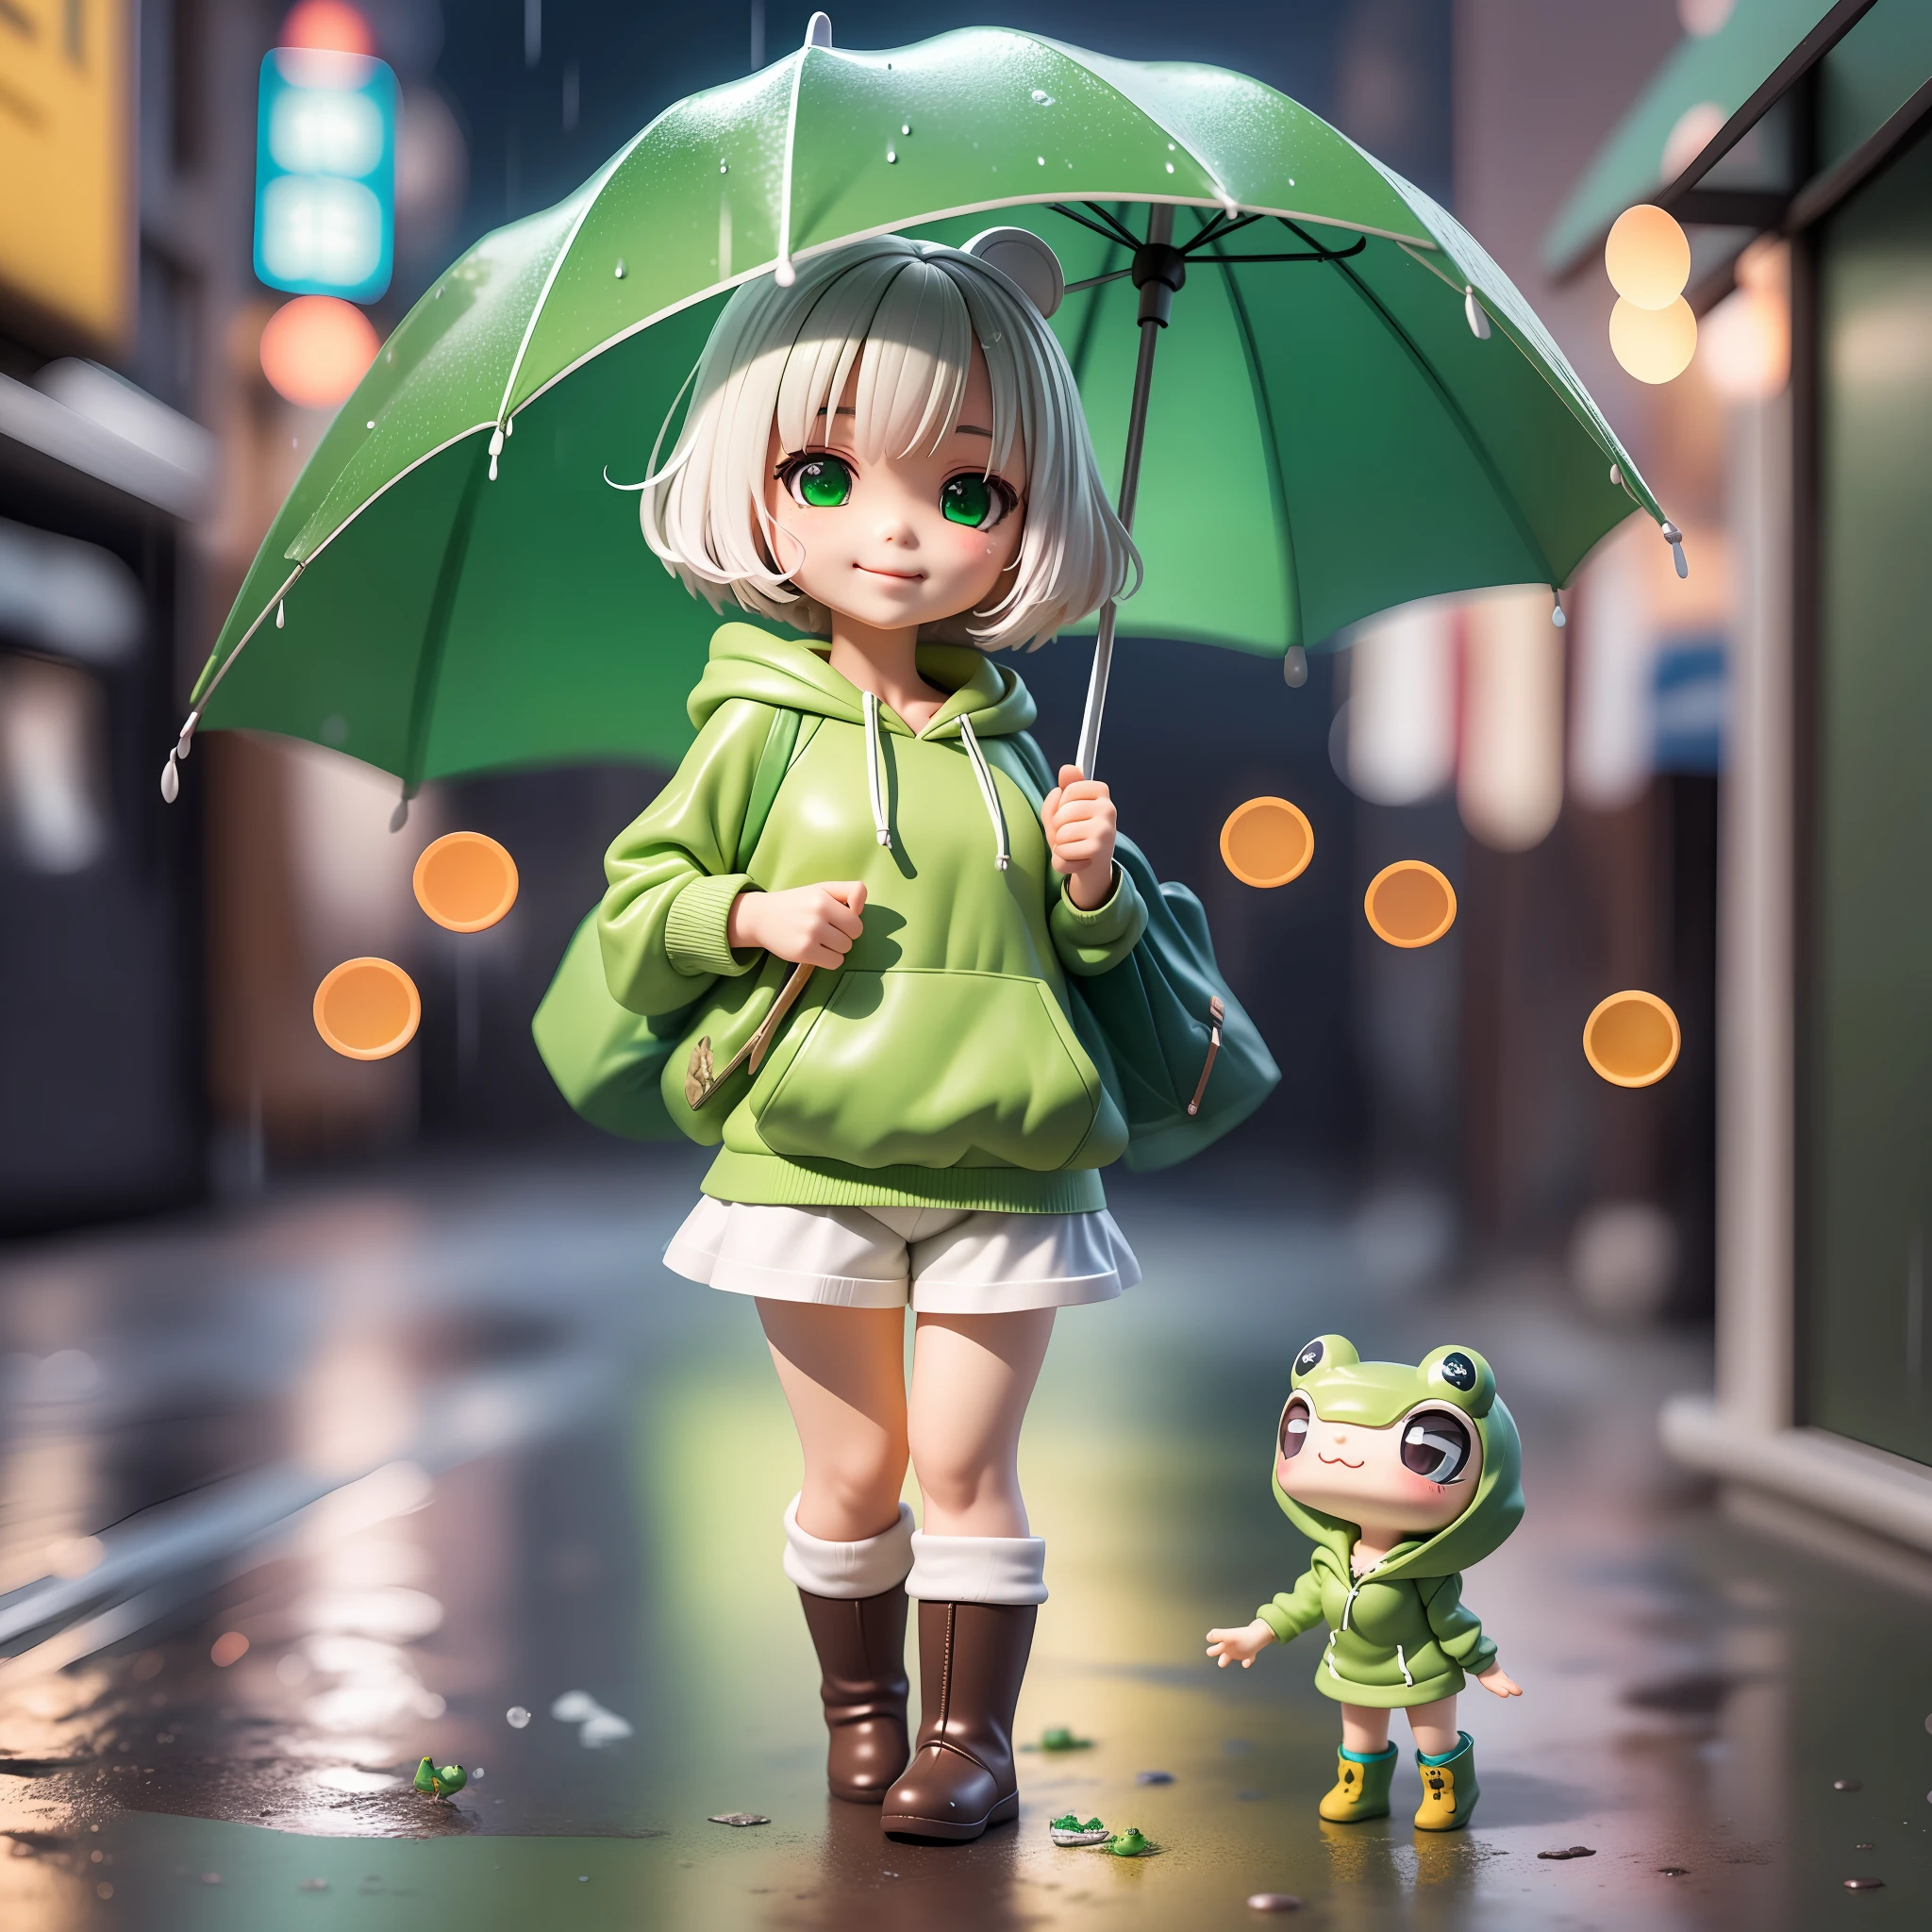 穿着绿色青蛙连帽衫的赤壁女孩, 拿着伞形青蛙风格, 落雨, 白色短发, 微笑字符, 穿着绿色靴子, HDR, 盲盒, 4D, 3D, 硬阴影, 硬光, 可爱又小身材, 下雨的东京背景它晚上, 更多NPC